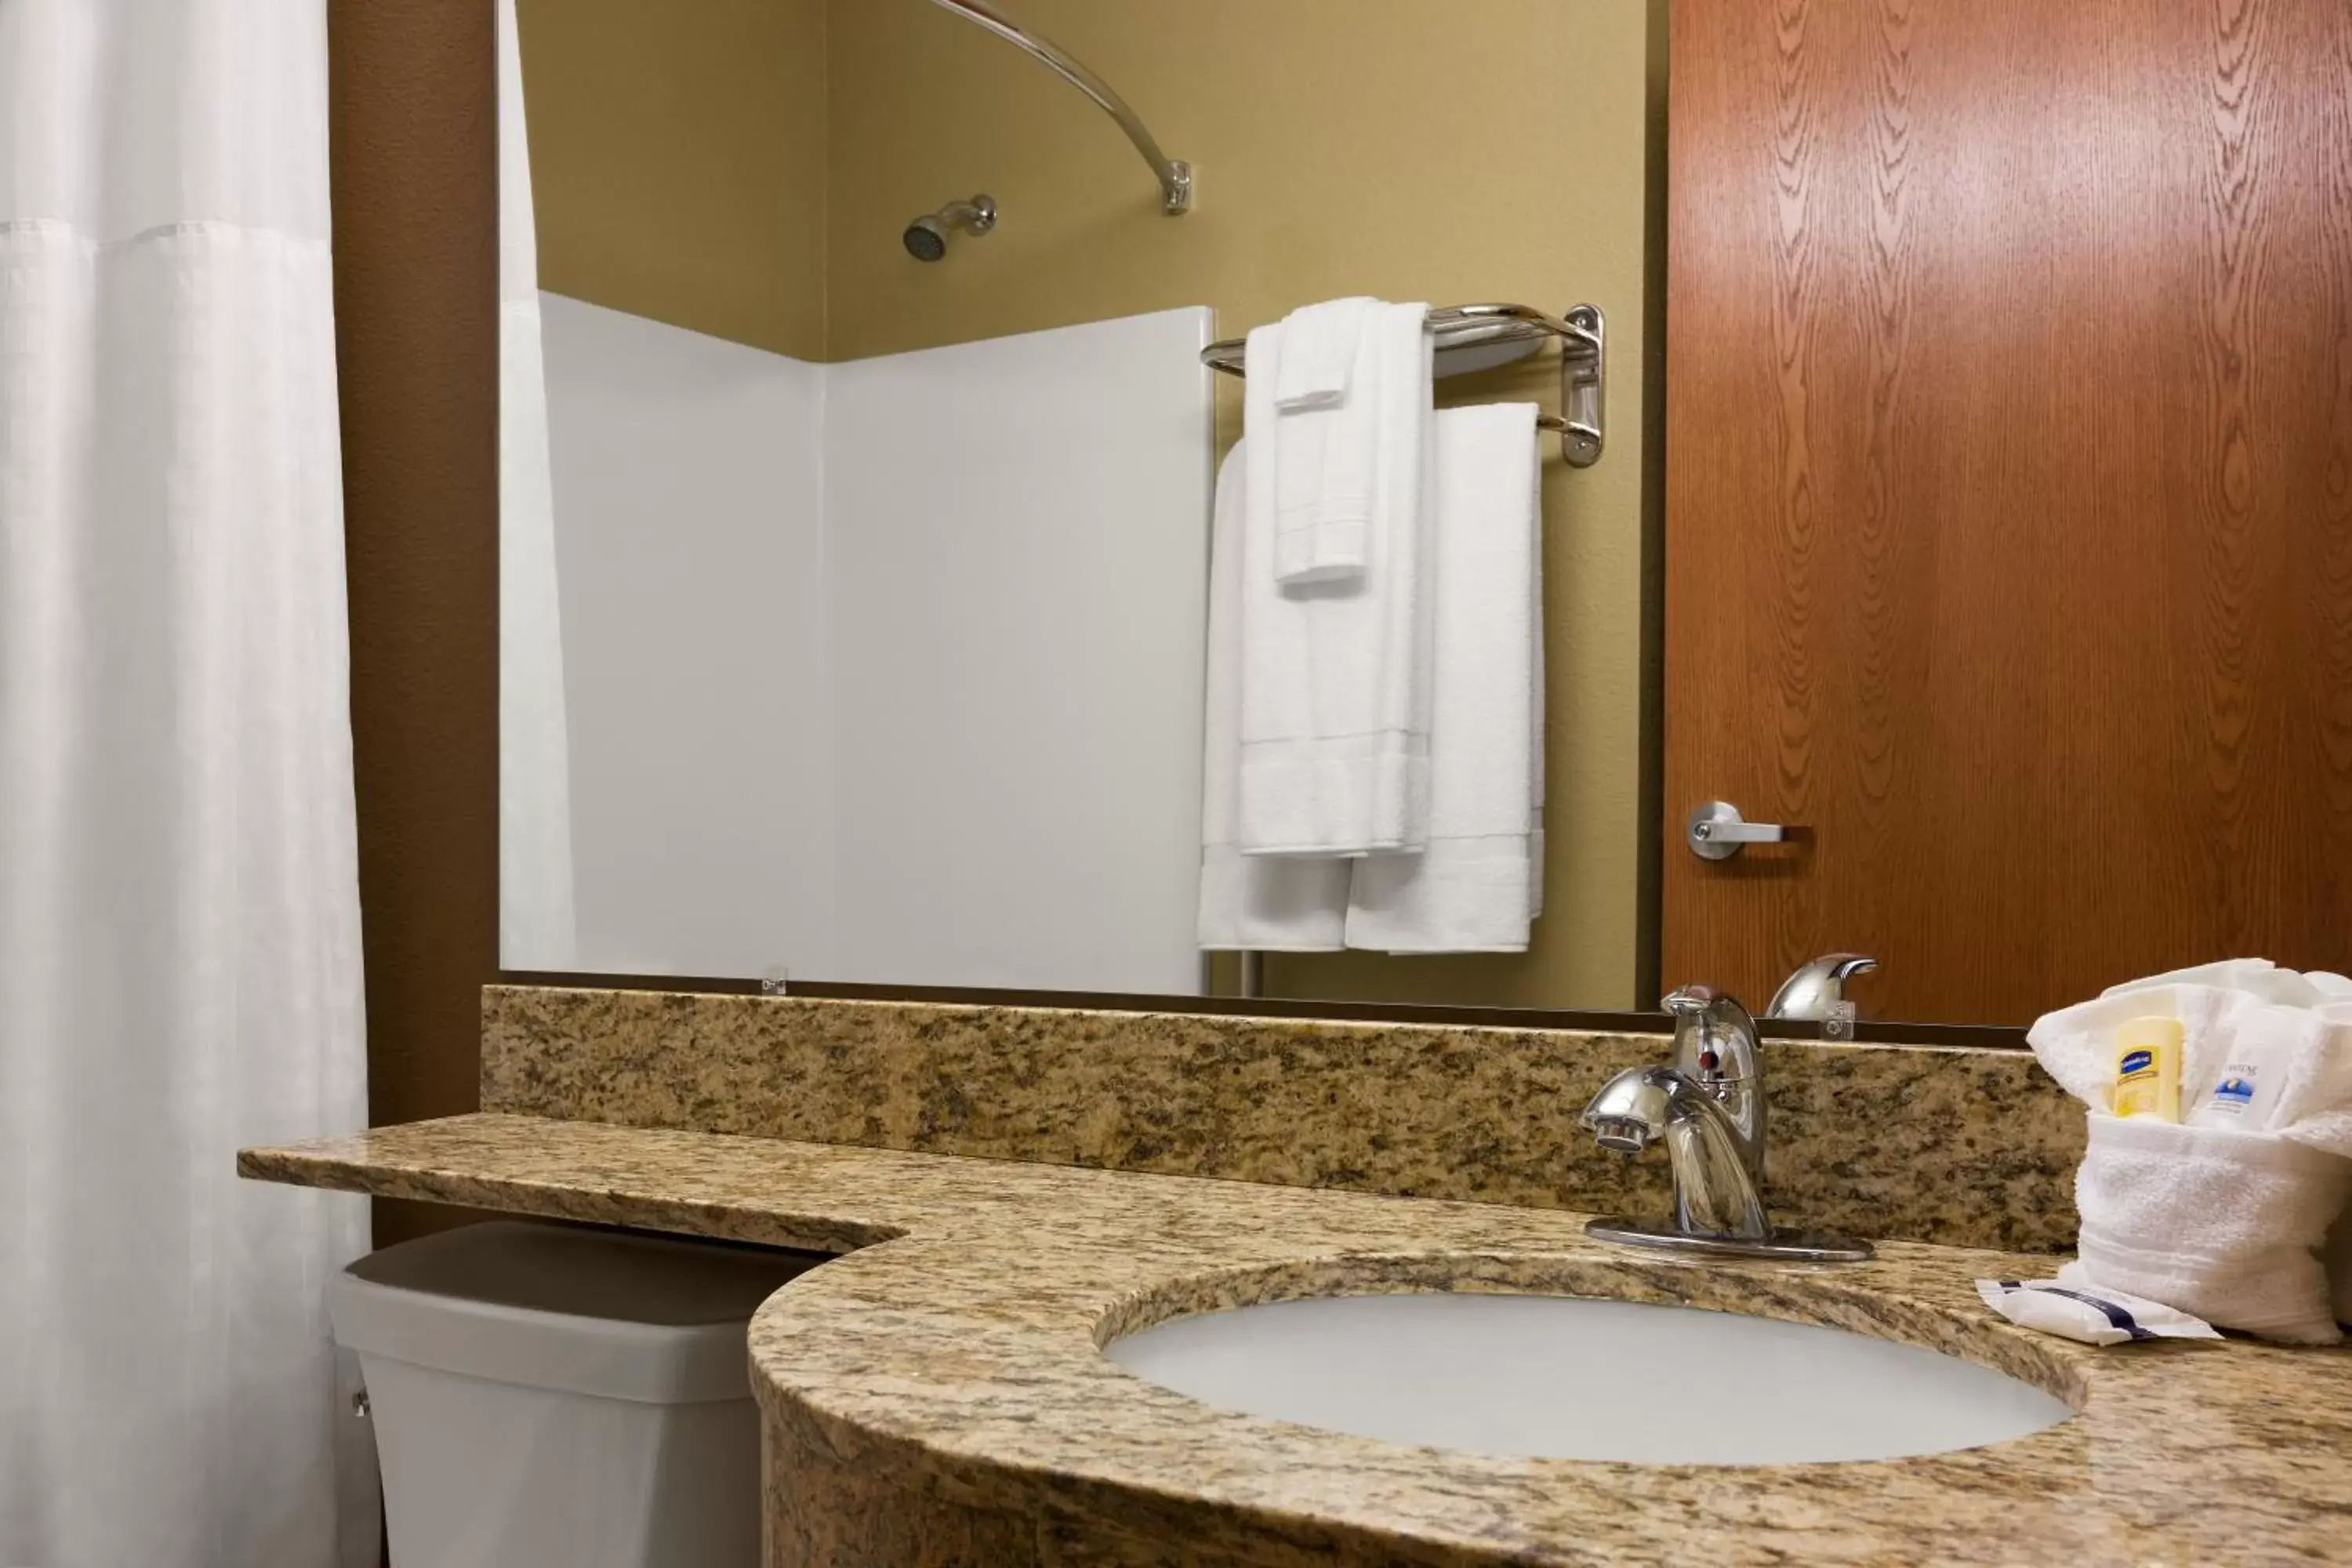 Bathroom in Microtel Inn & Suites Pleasanton